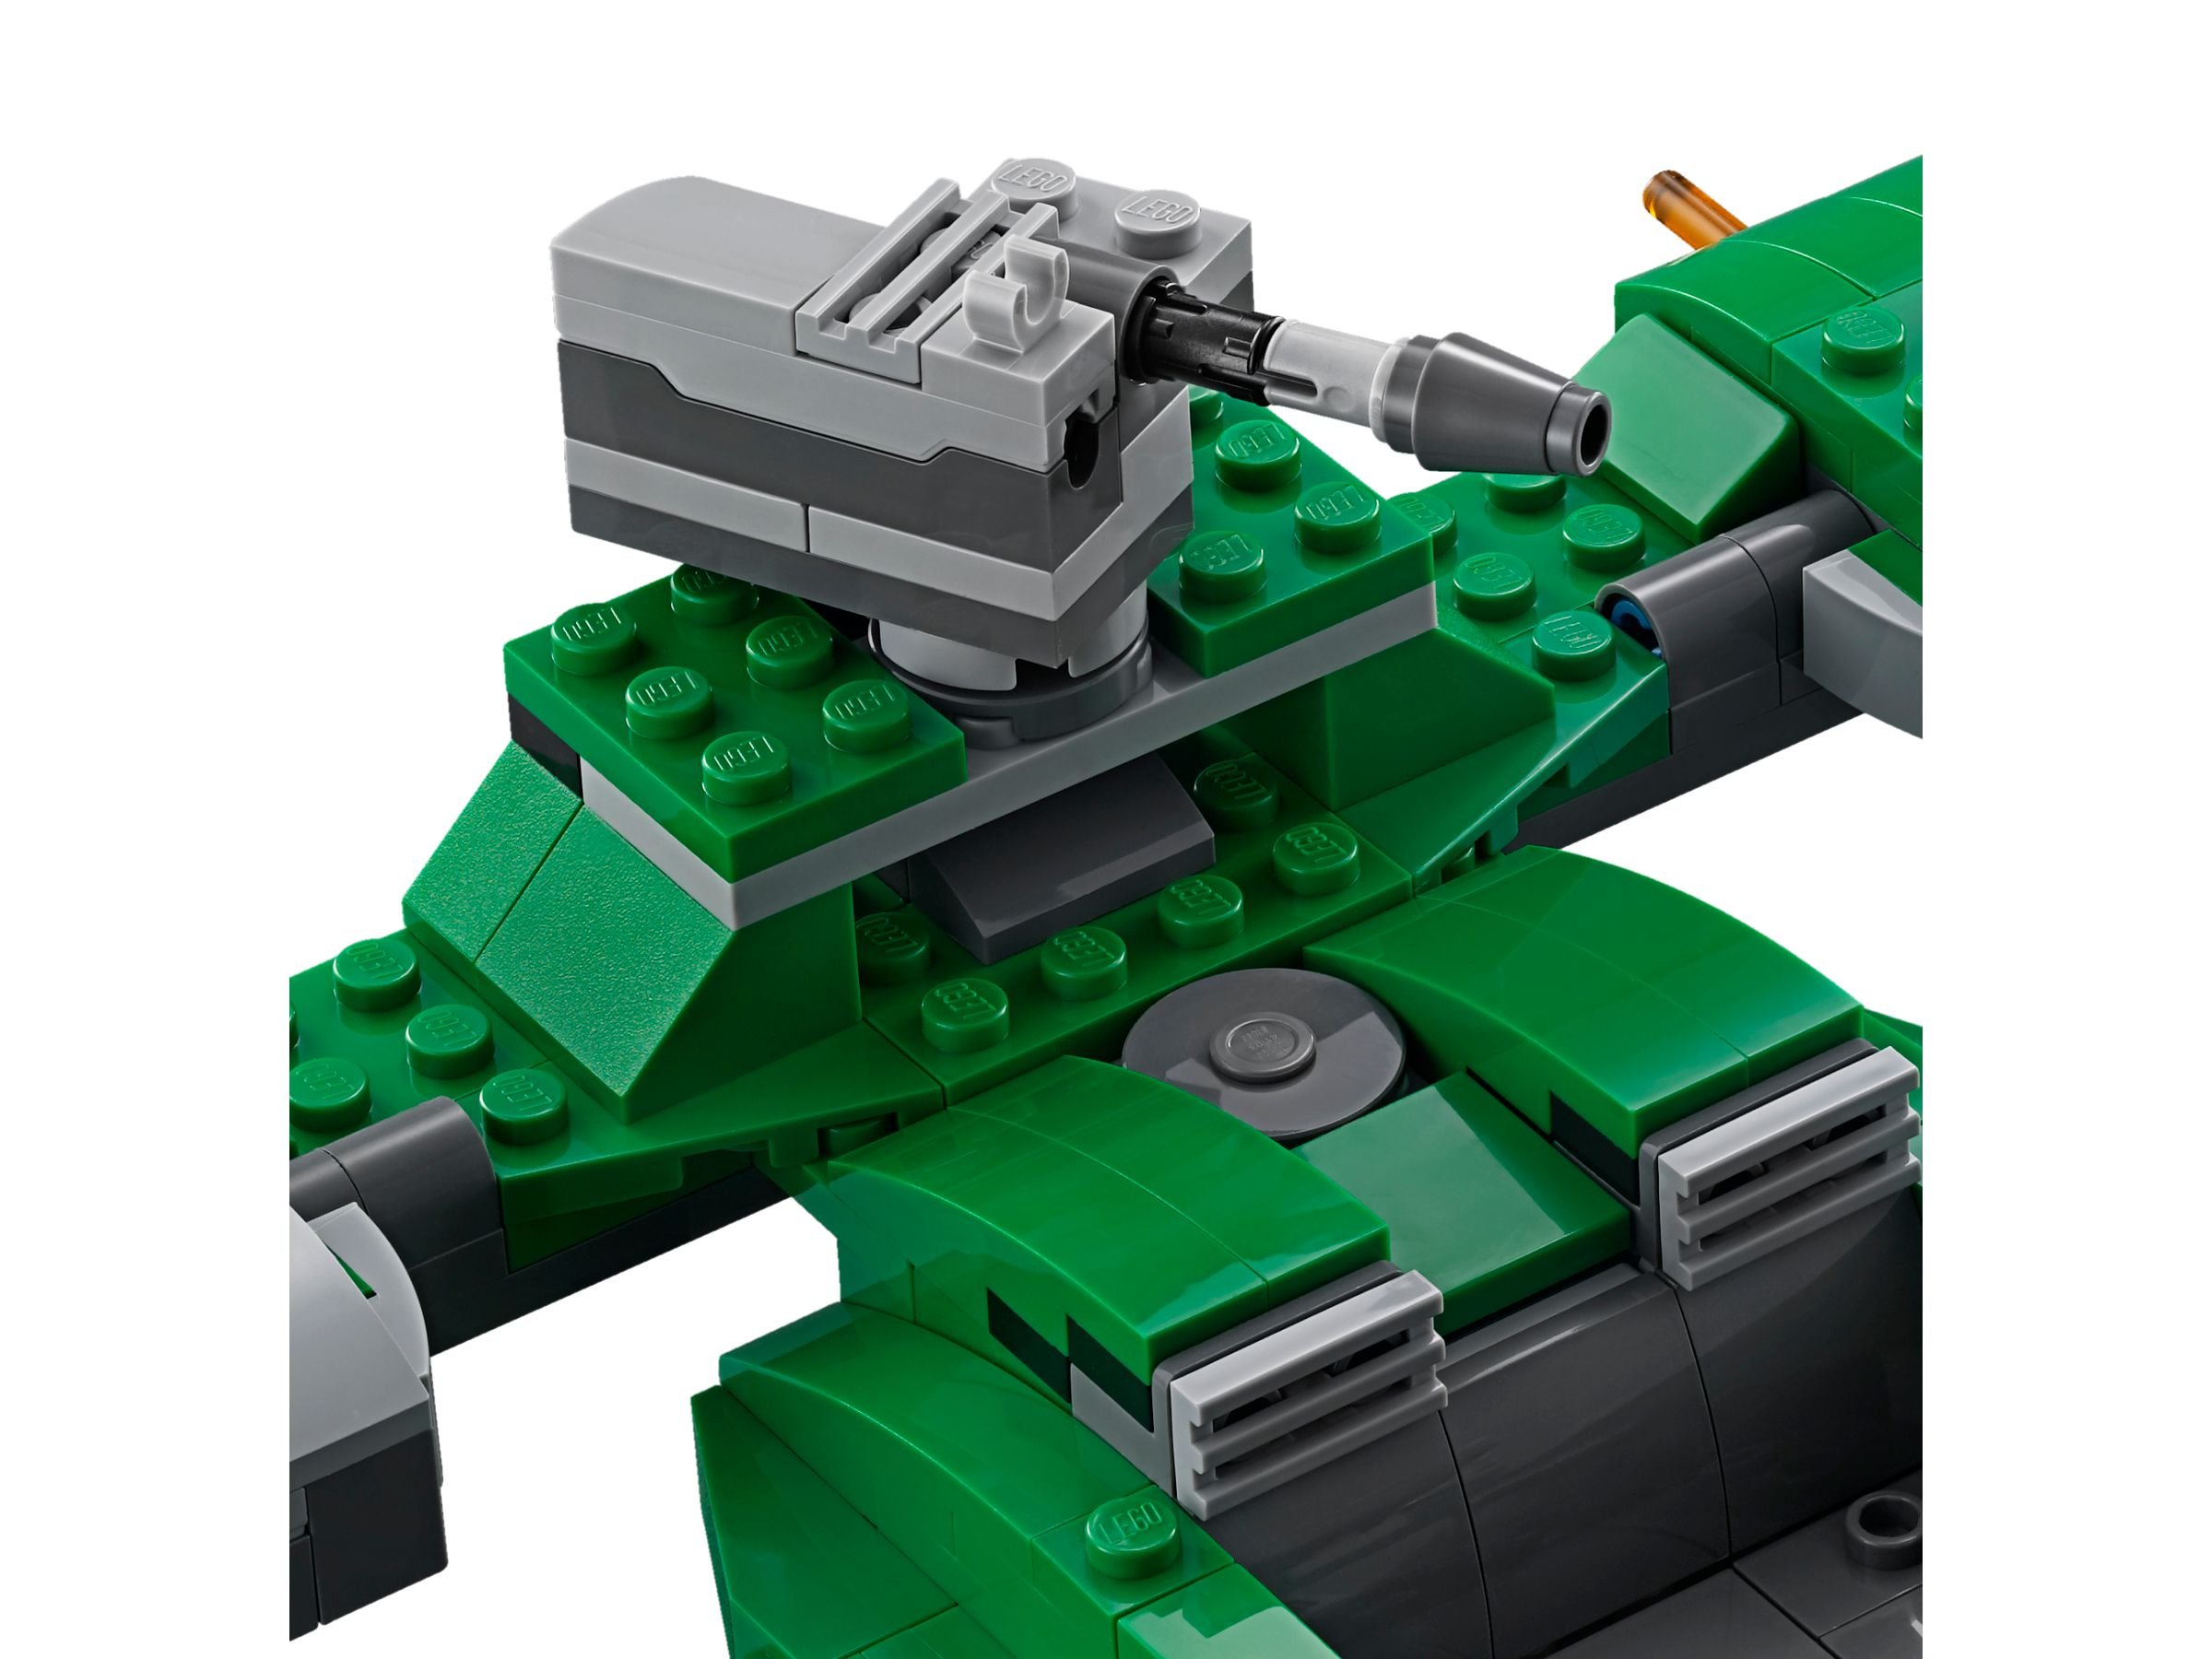 LEGO Star Wars 75091 Flash Speeder™ LEGO_75091_alt4.jpg